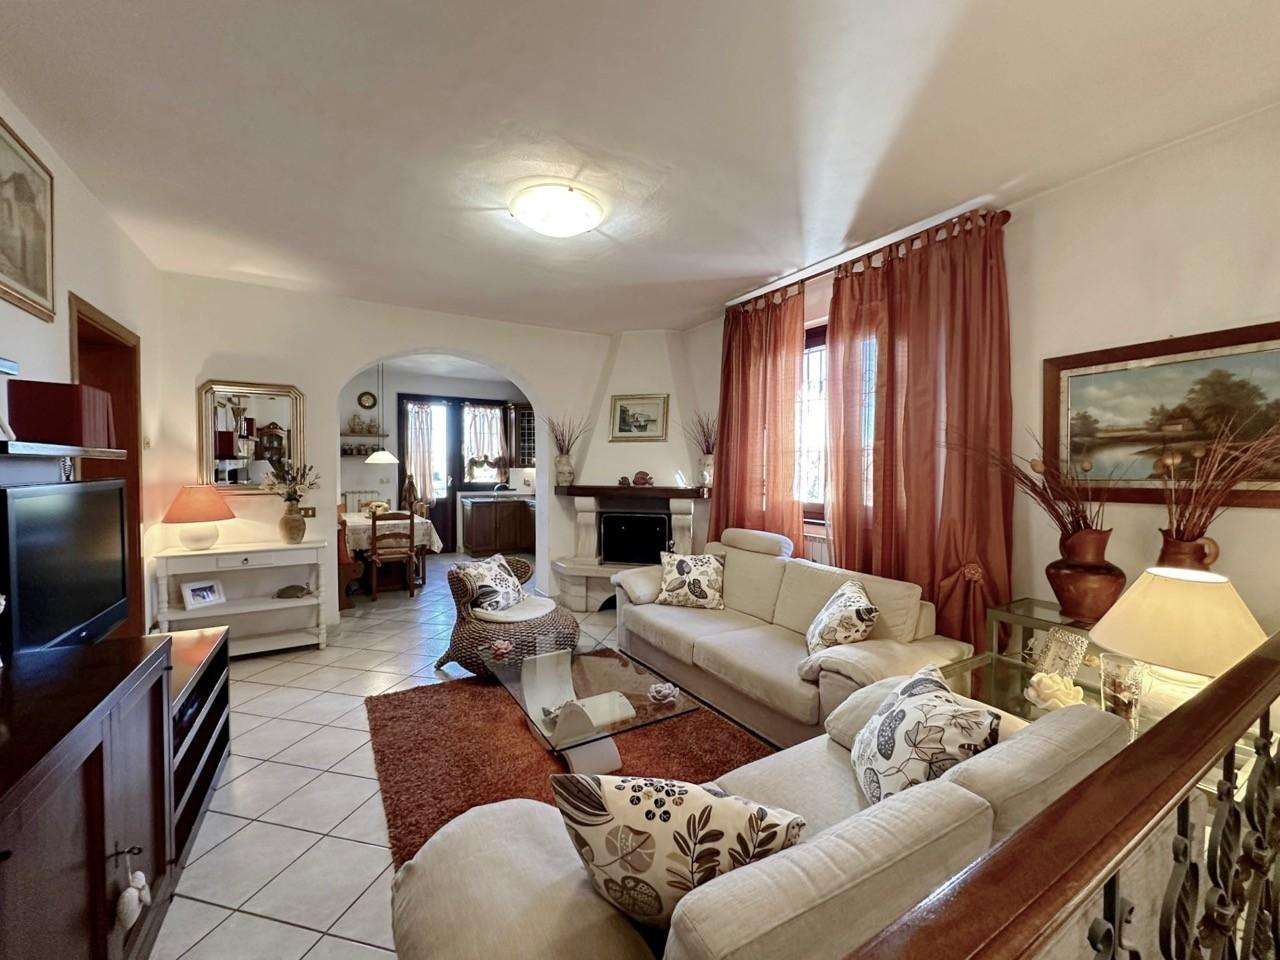 Casa Bi - Trifamiliare in Vendita a Pisa Via delle Lenze, 56122